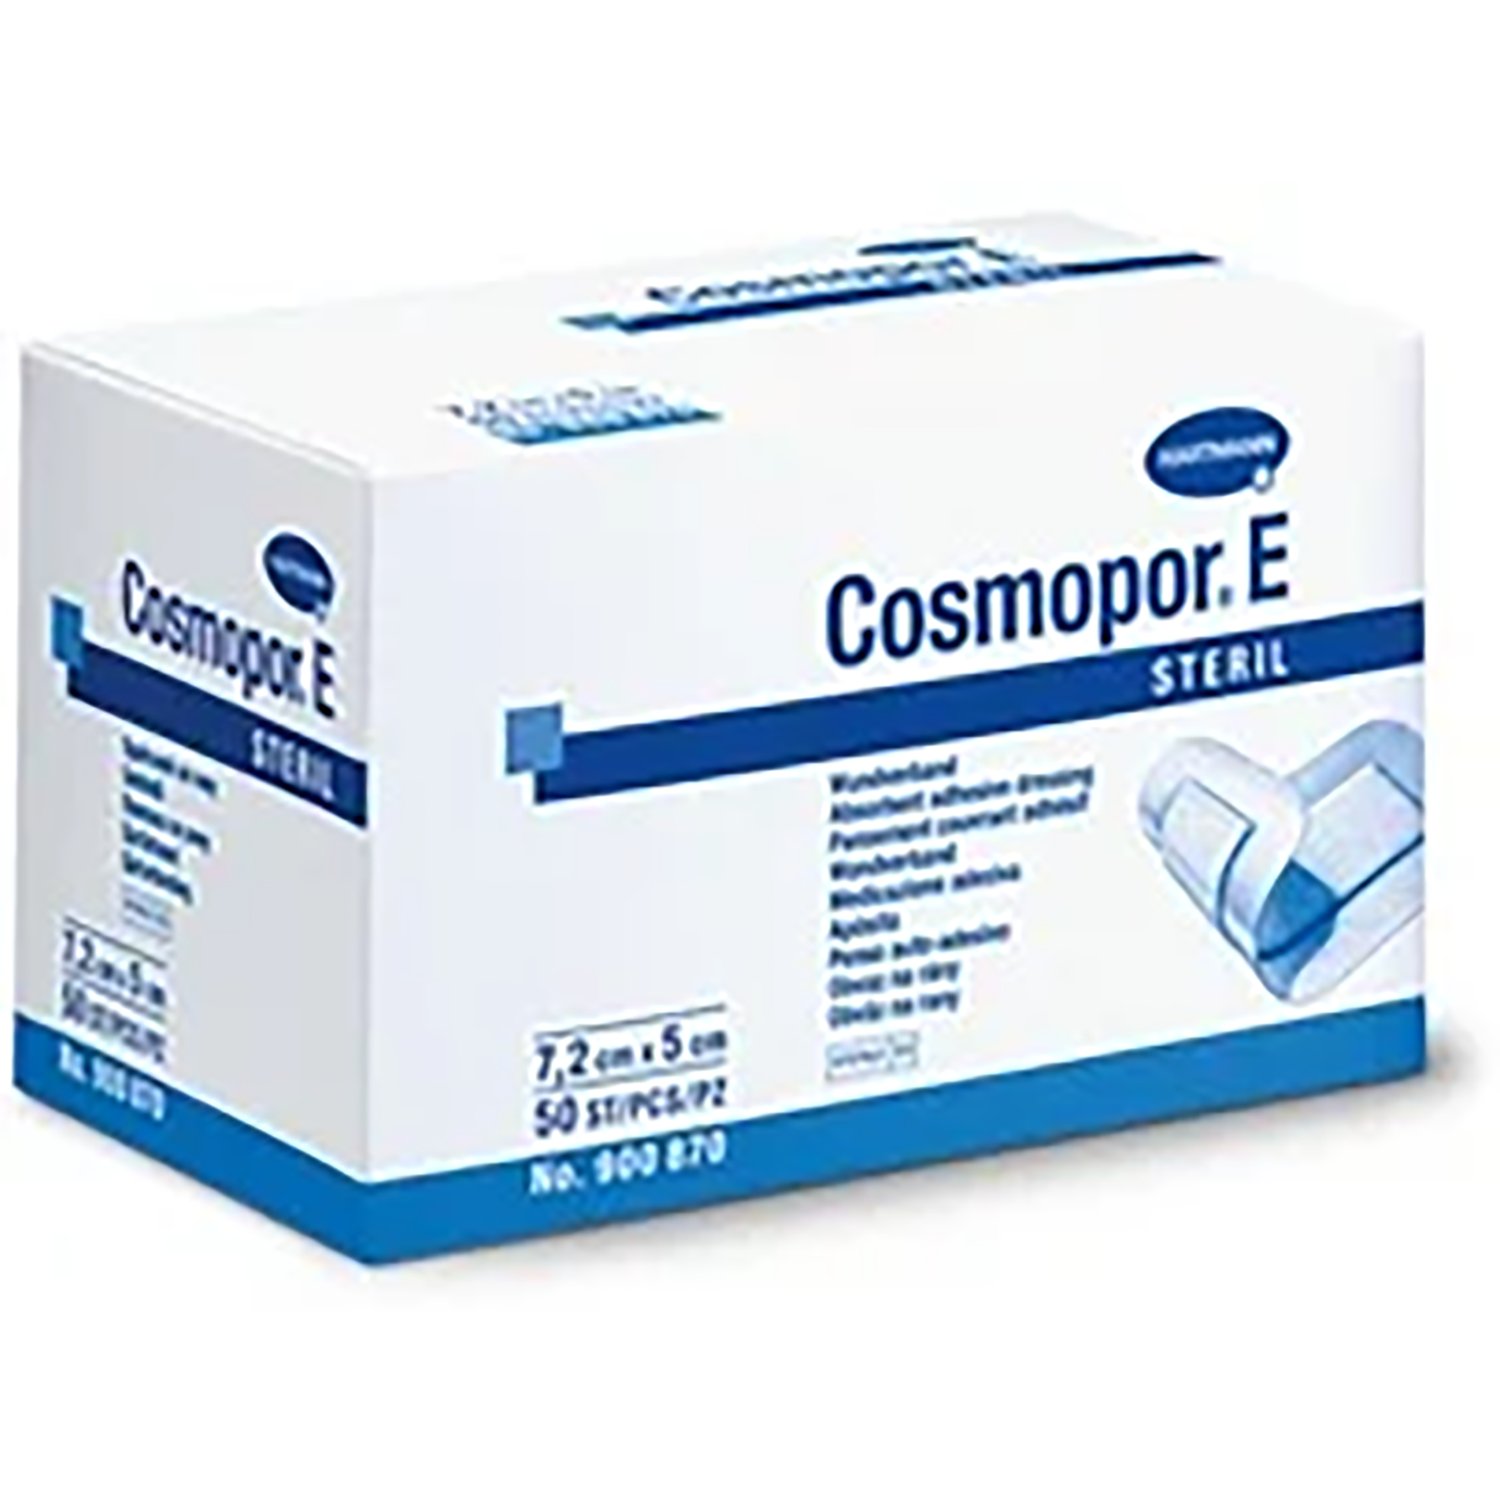 Cosmopor E Dressing | 10 x 8cm | Pack of 25